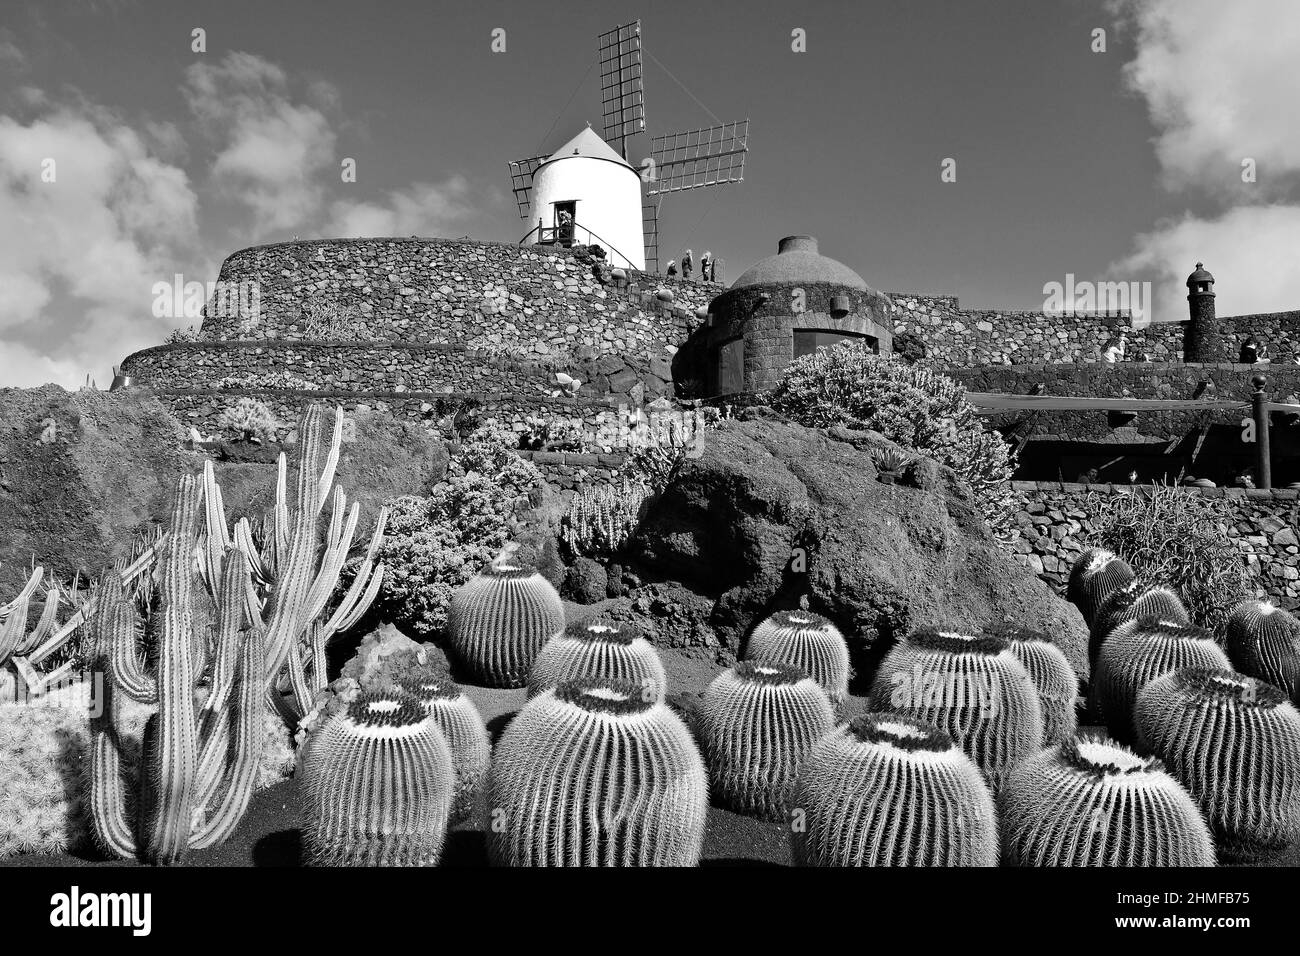 Jardin de Cactus, cactus garden in Guatiza, Lanzarote, Spain Stock Photo